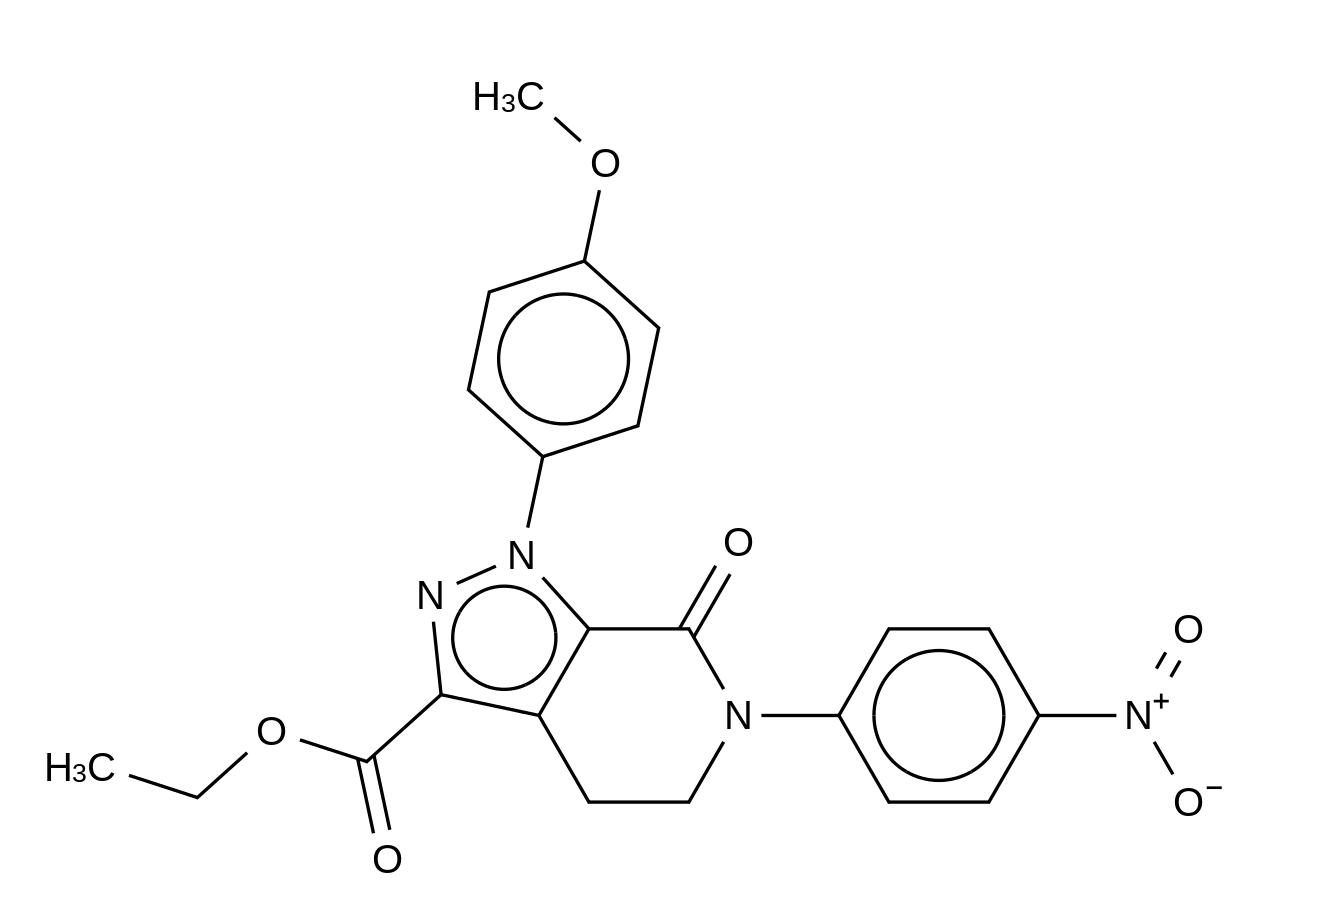 Ethyl 1-(4-Methoxyphenyl)-6-(4-nitrophenyl)-7-oxo-4,5,6,7-tetrahydro-1H-pyrazolo[3,4-c]pyridine-3-carboxylate